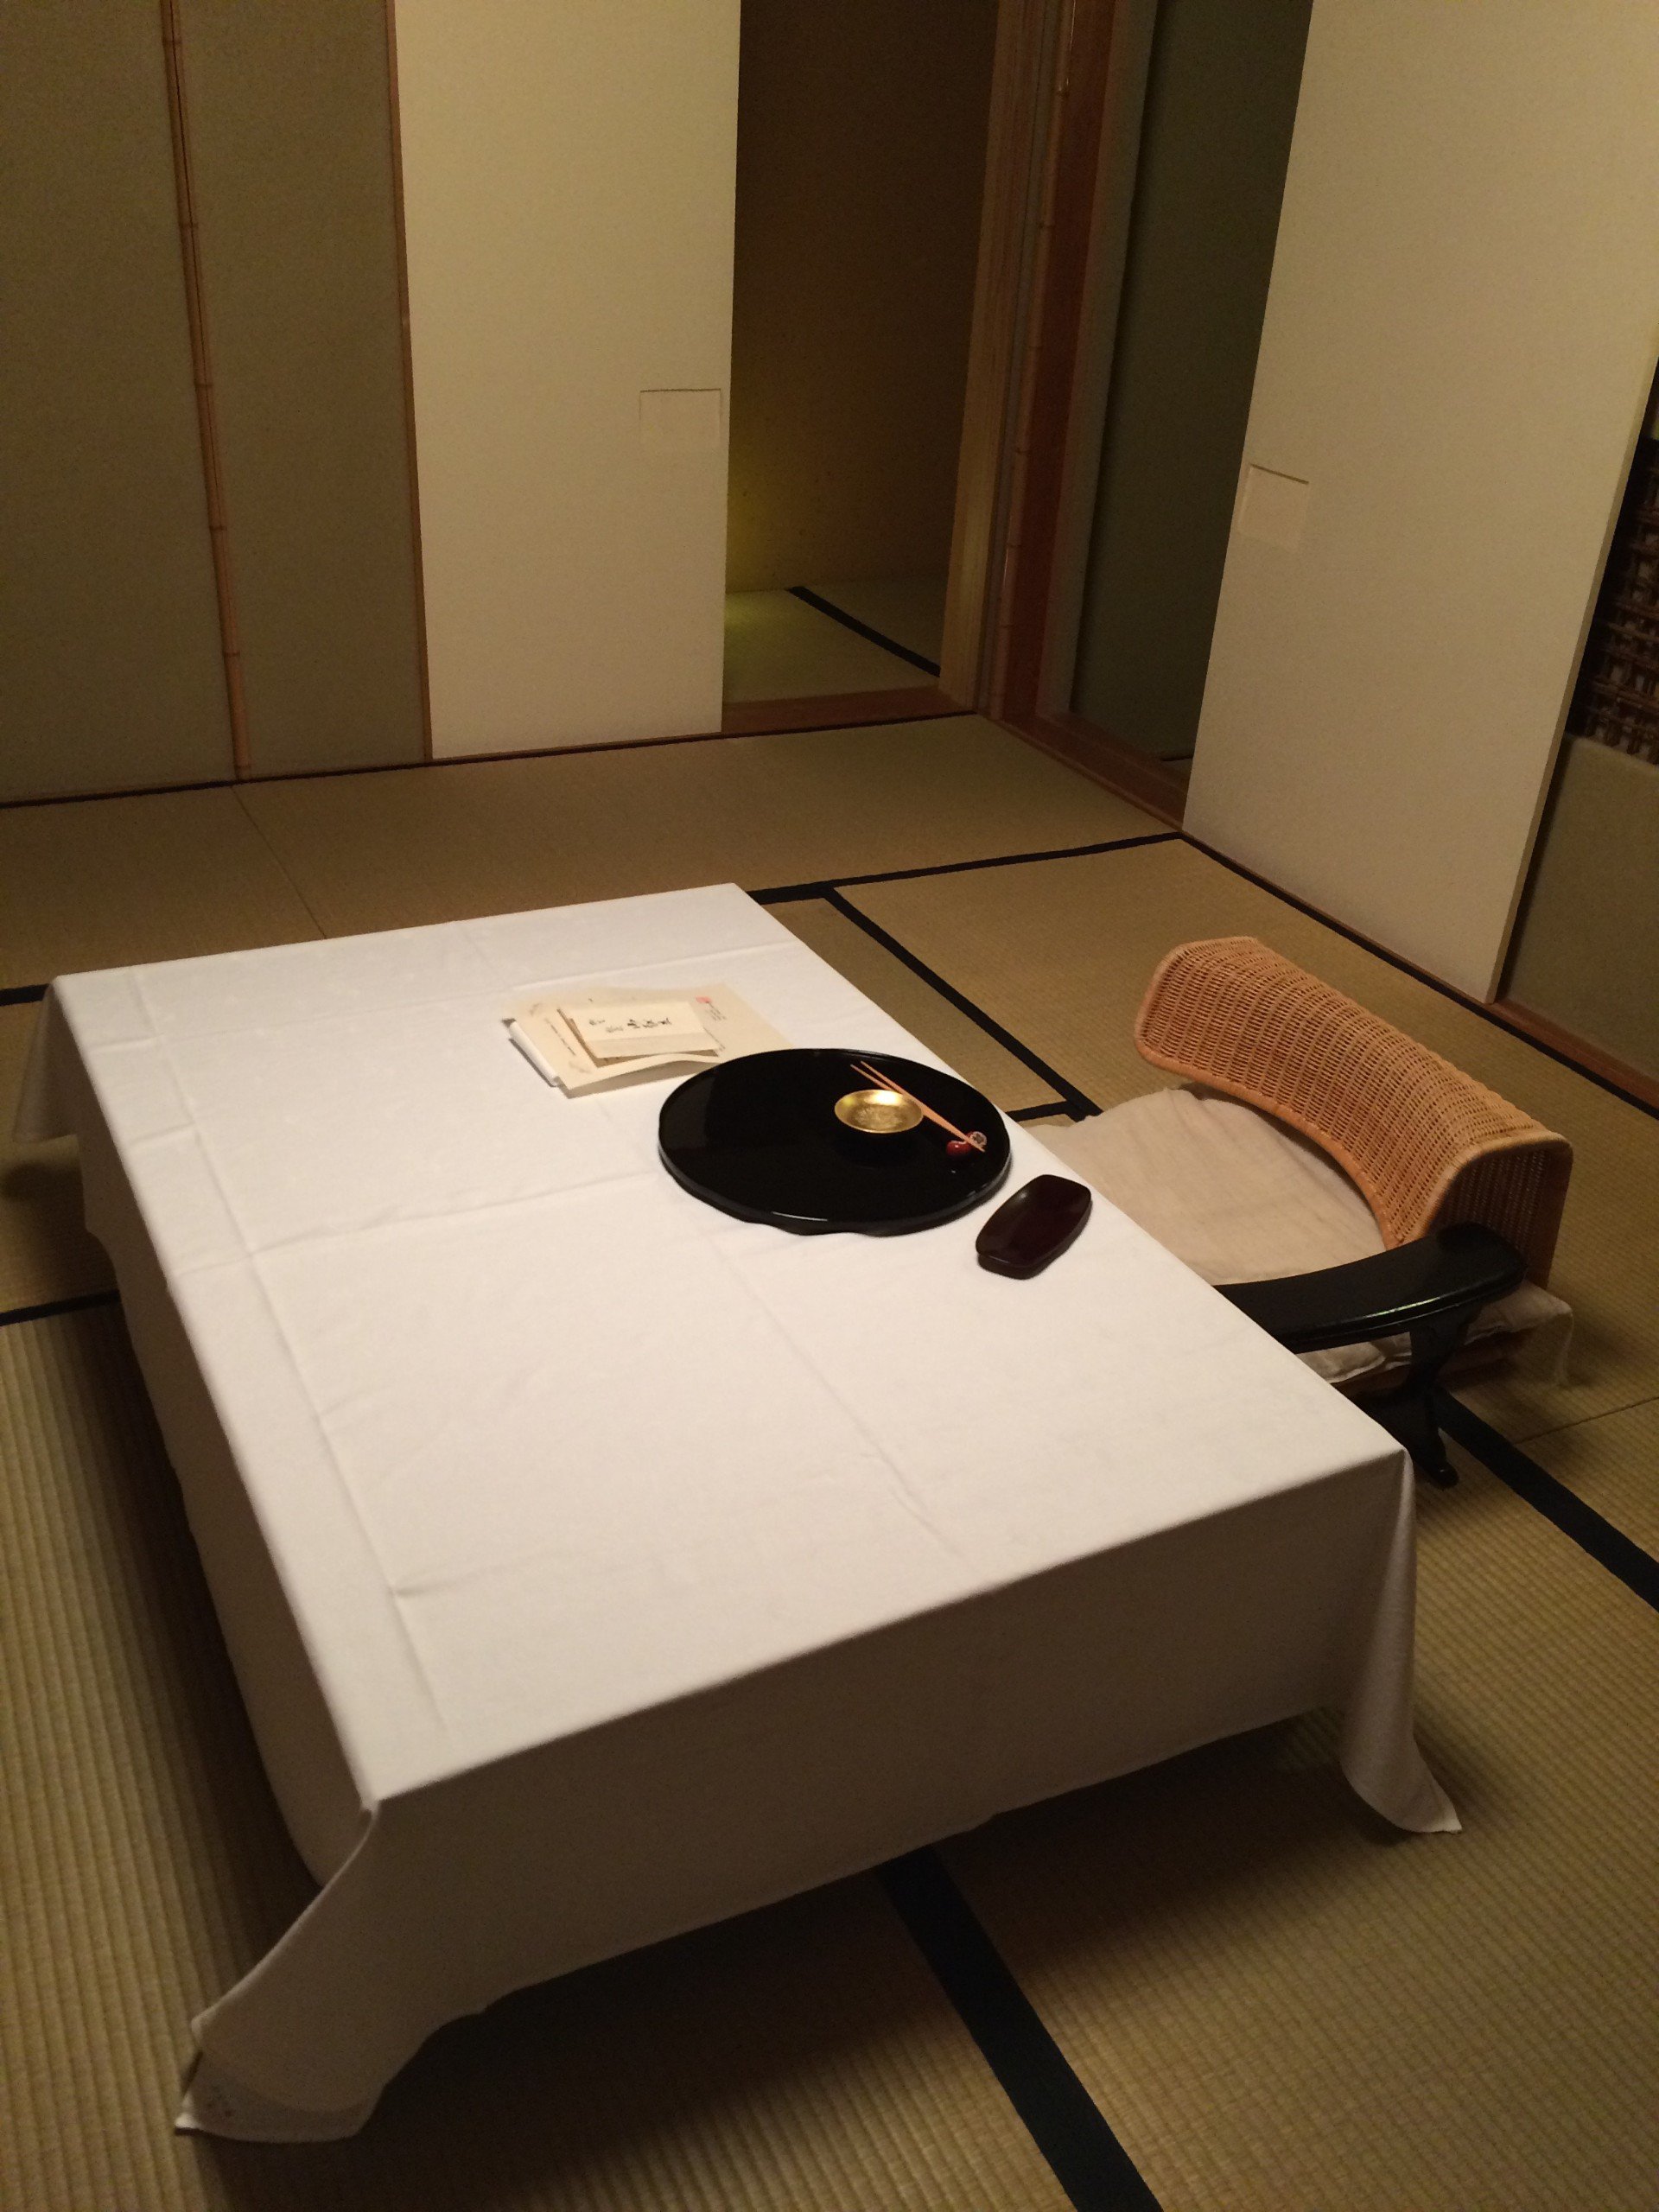 Mesa y silla al nivel del piso en un ryokan, alojamiento tradicional japonés.